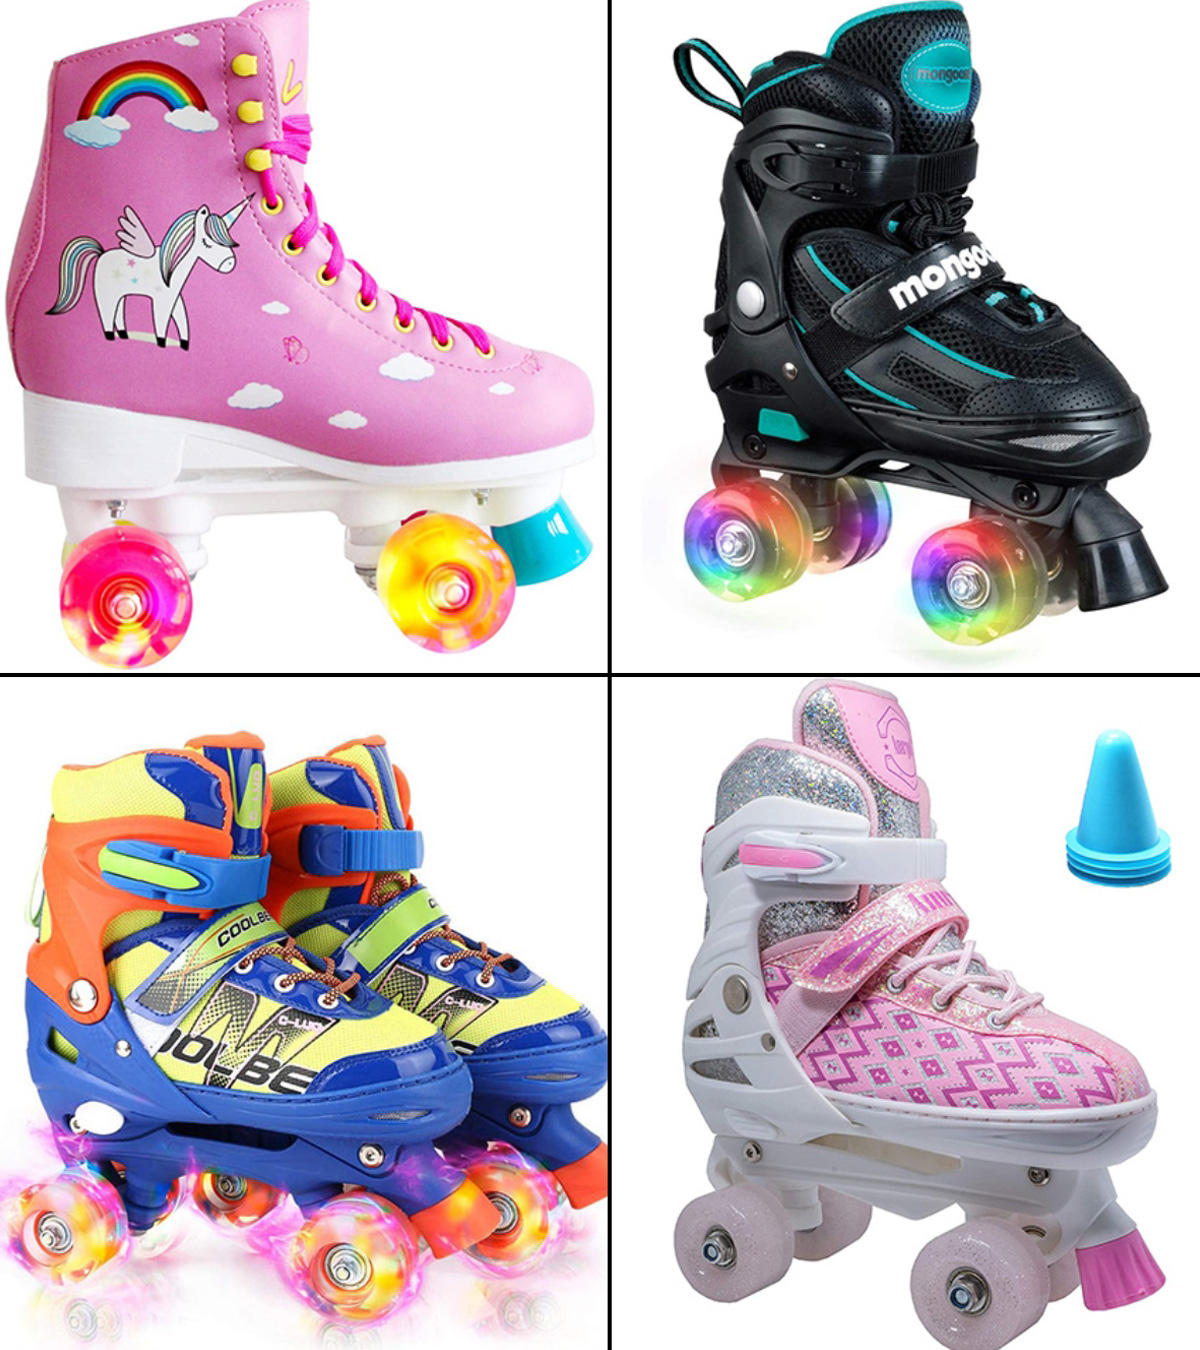 Adjustable Roller Skates Kids, Kids Rollerskates